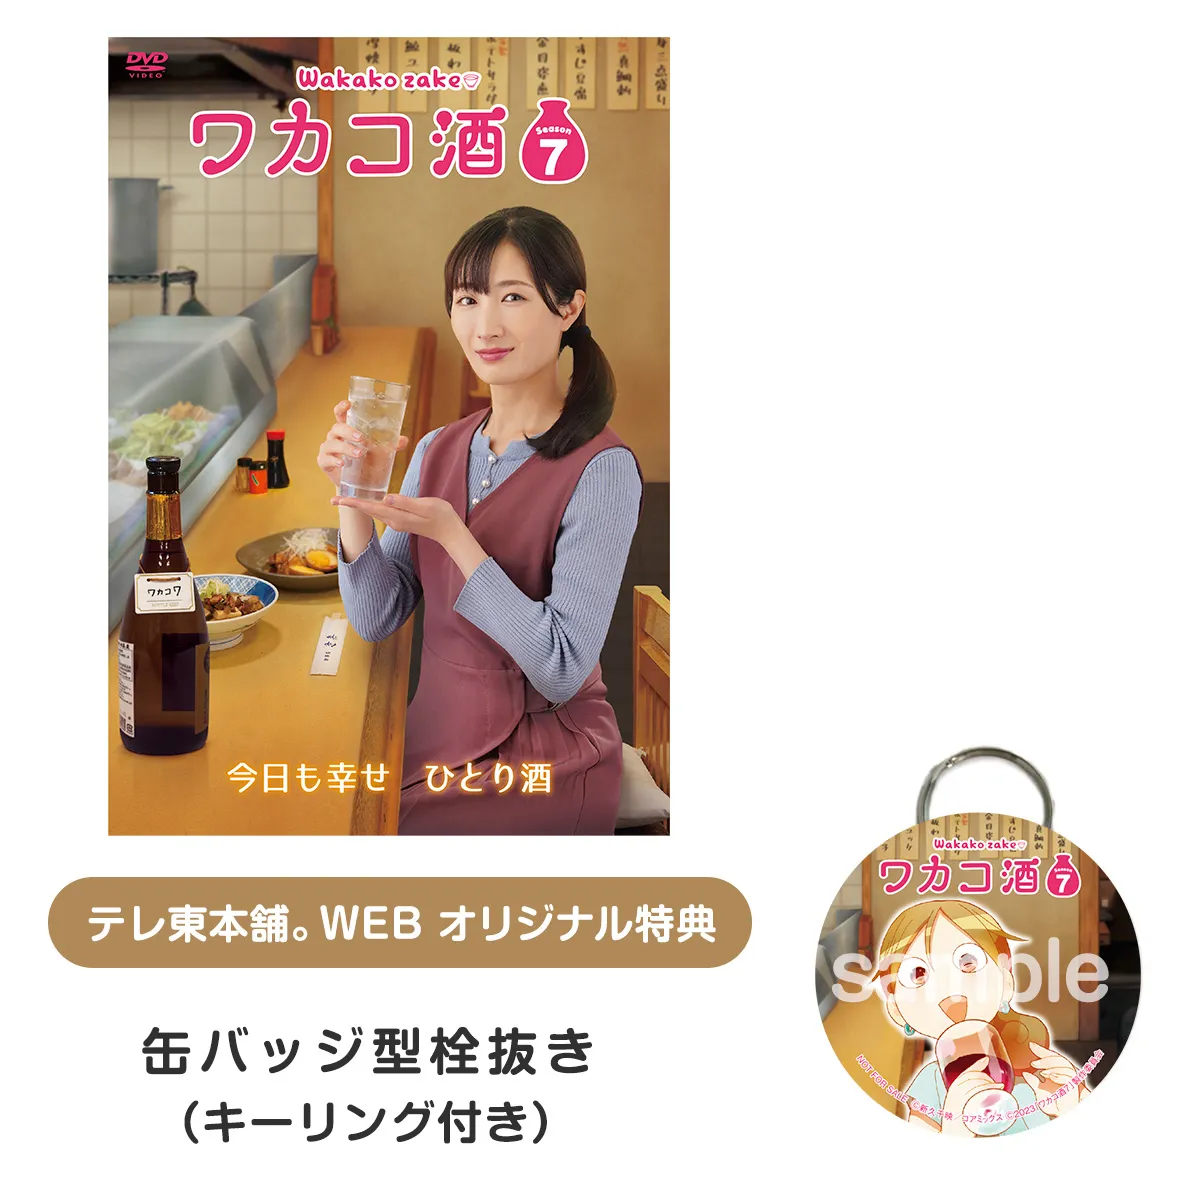 ワカコ酒 Season7 DVD BOX